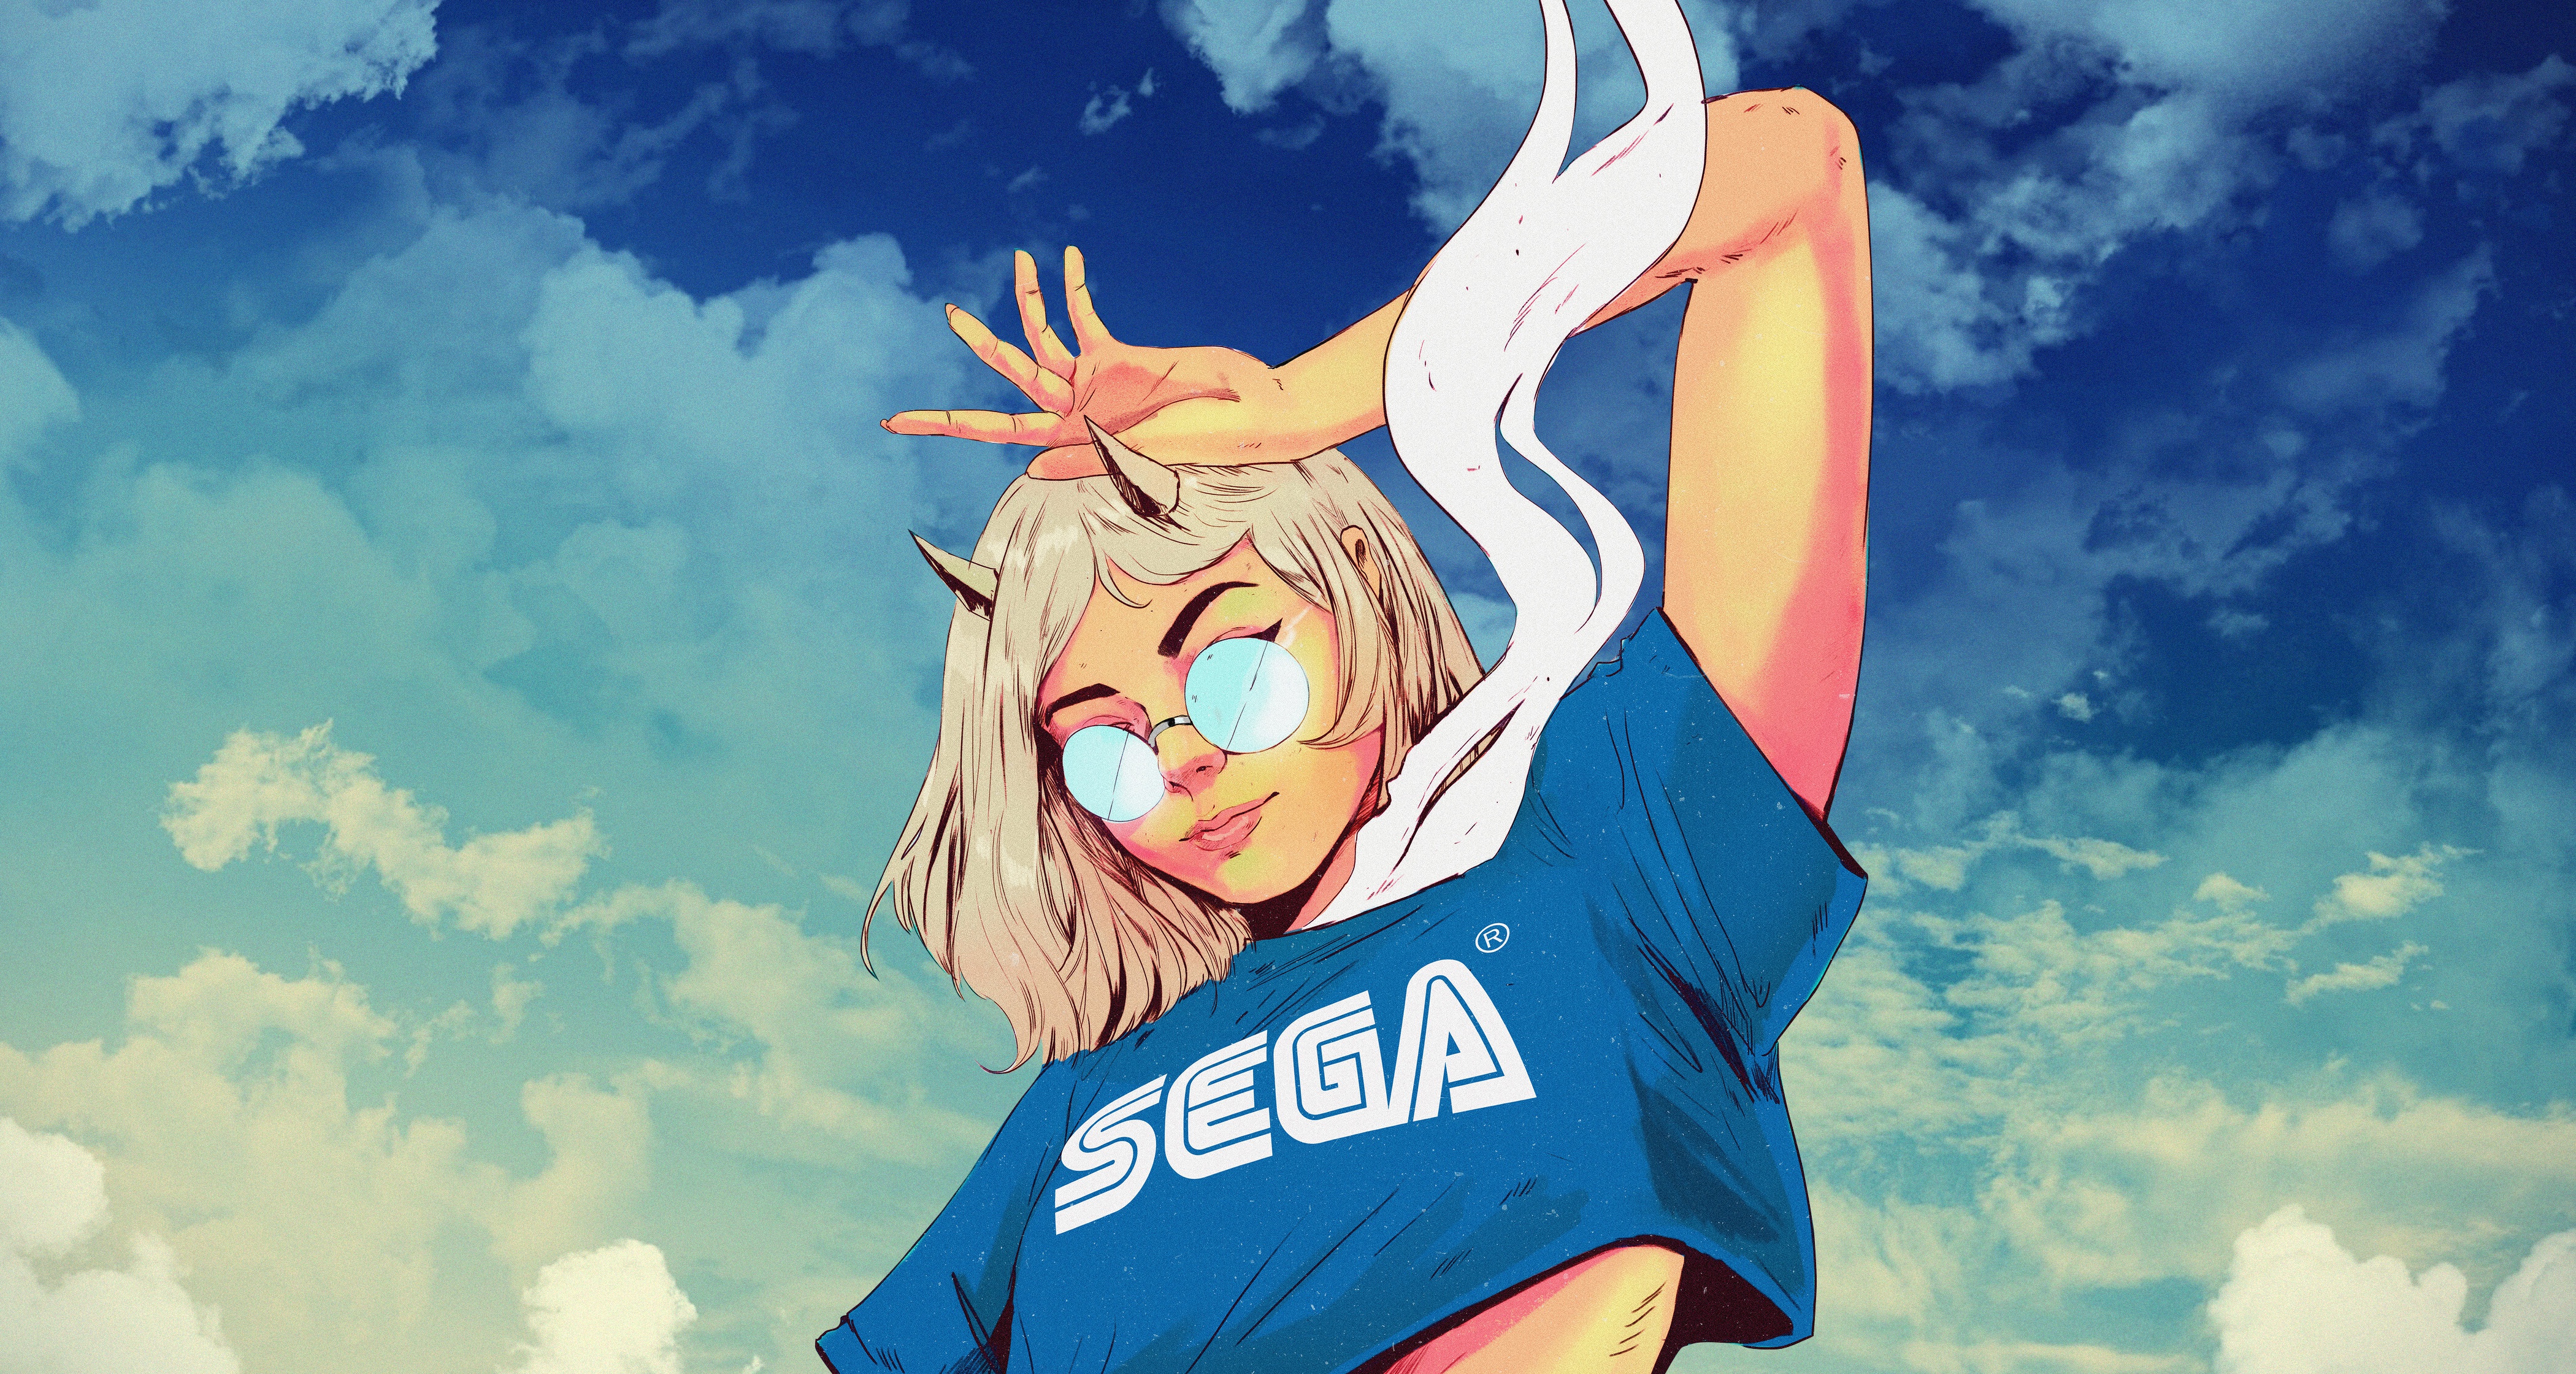 Sega Girl Tshirt Sega Girl Tshirt Wallpapers Sega Girl Tshirt 4k